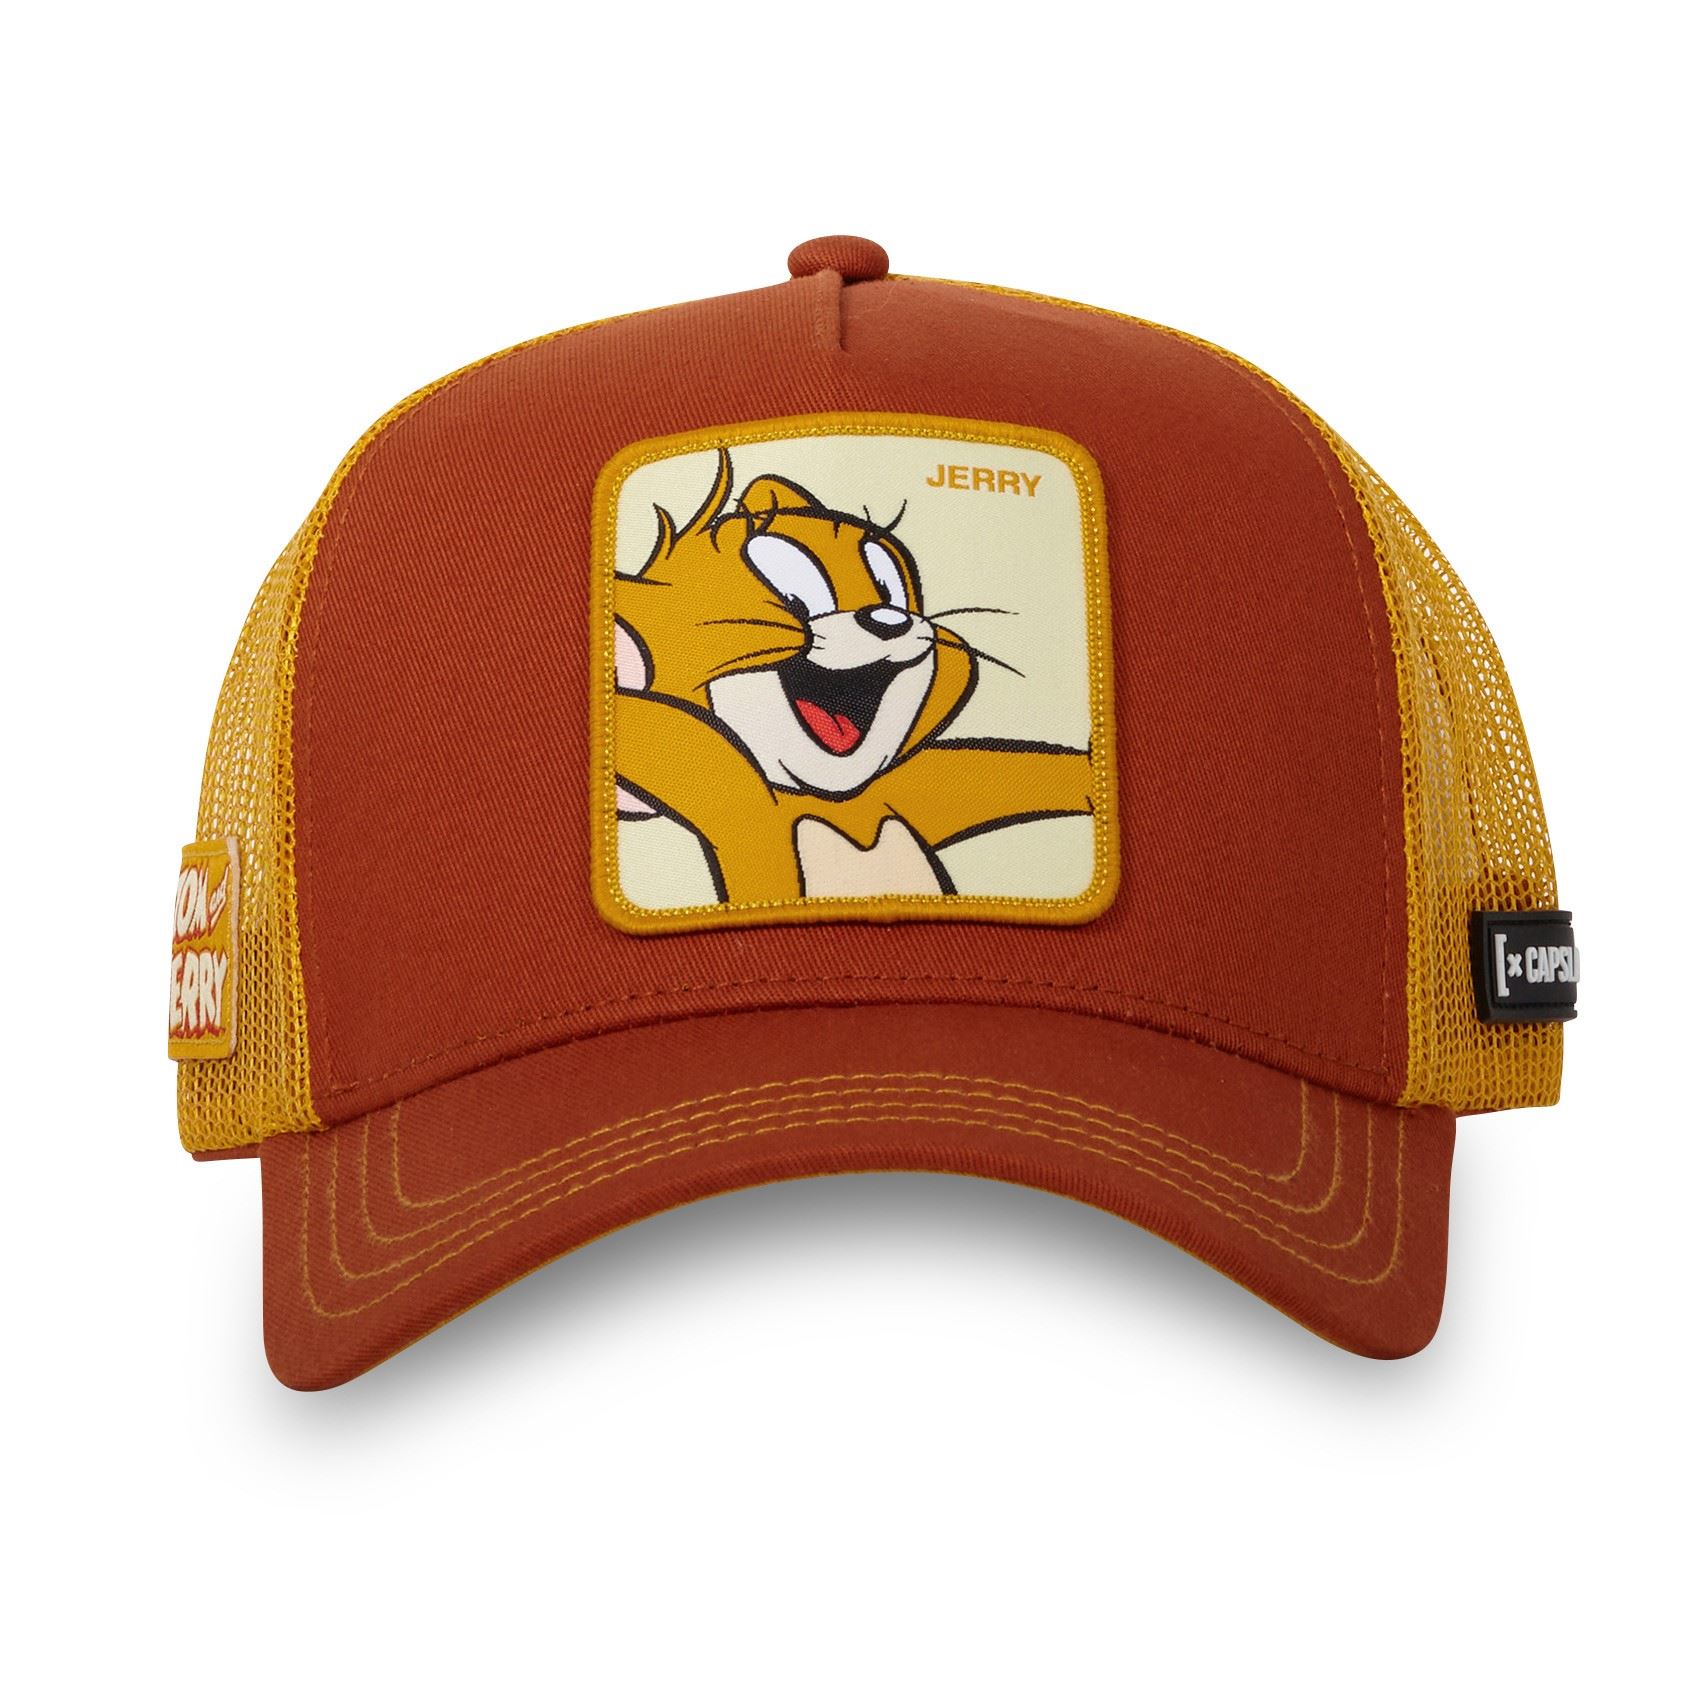 Jerry Tom und Jerry Rot Gelb Trucker Cap Capslab